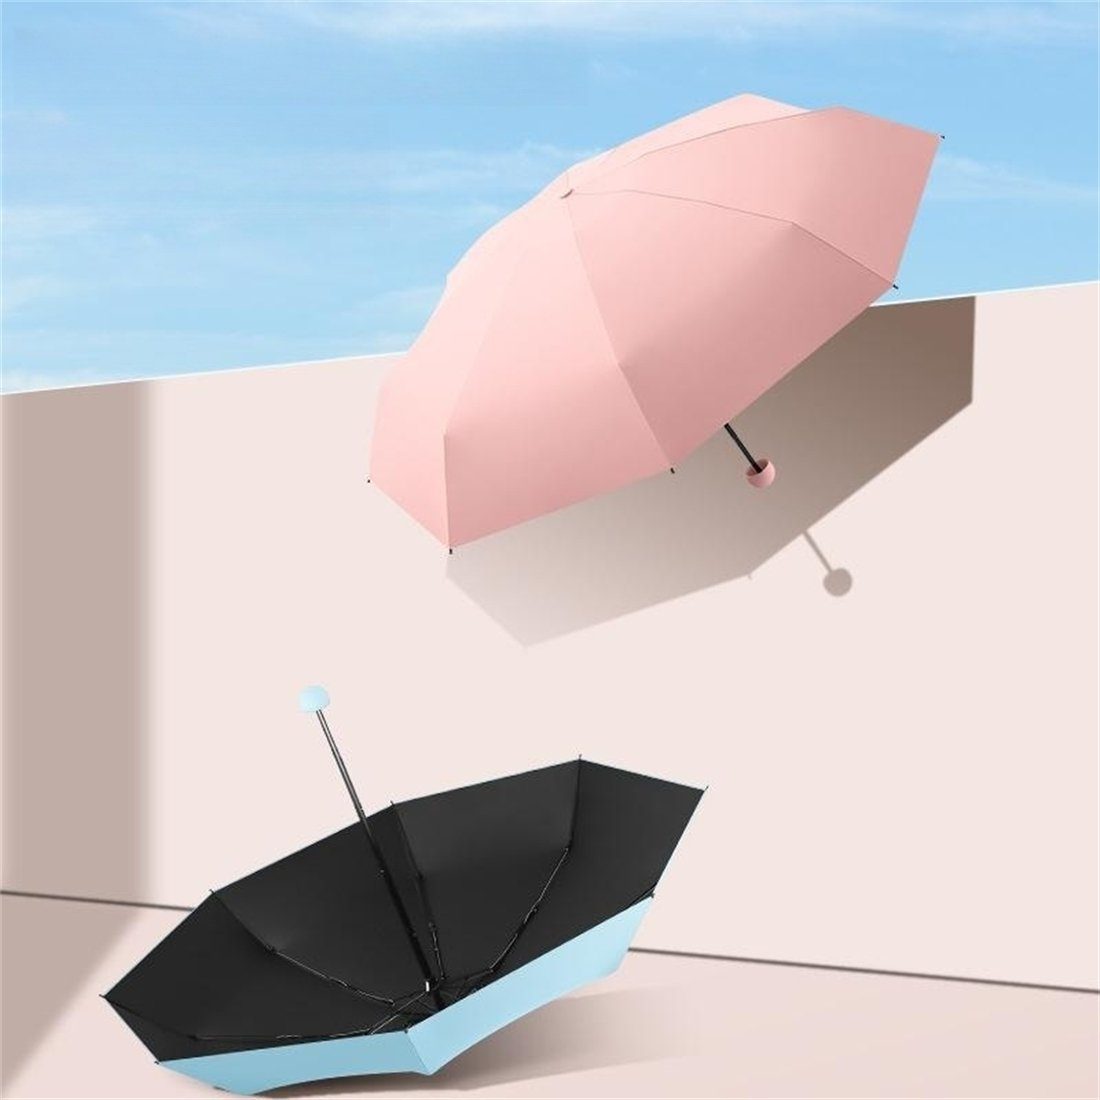 vor small Sonne winzig leicht Regenschirm für Mini damen klein manual und YOOdy~ Mintgrün für Taschenschirme UV-Schutz schützt Sonnenschutz, unterwegs Taschenregenschirm Regen